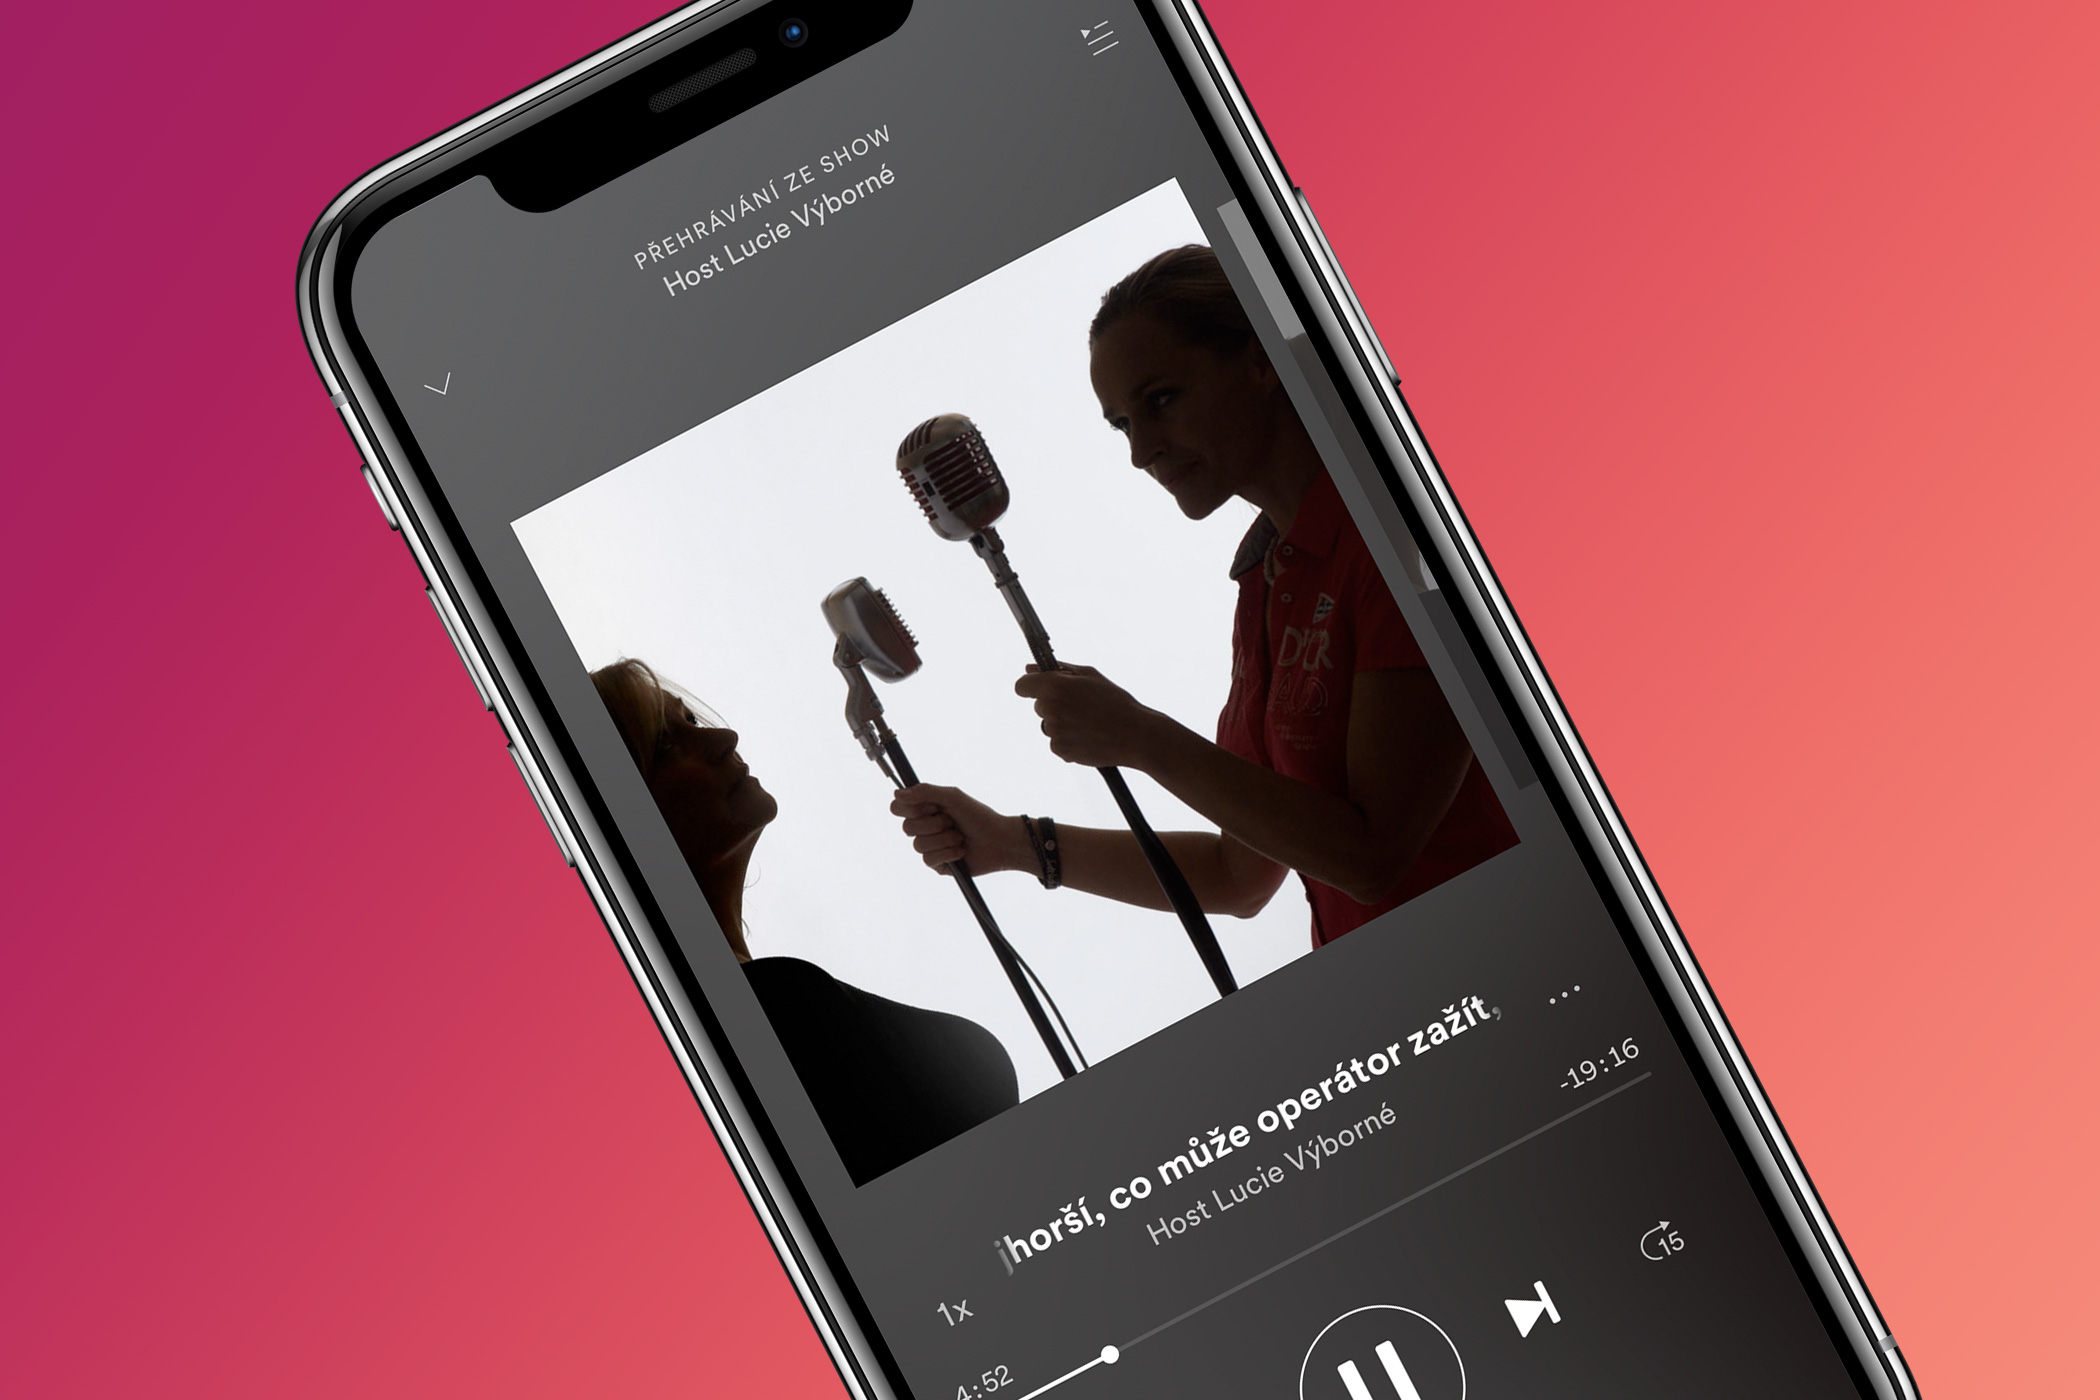 Podcast Hosta Lucie Výborné a Hosta Radiožurnálu na Spotify